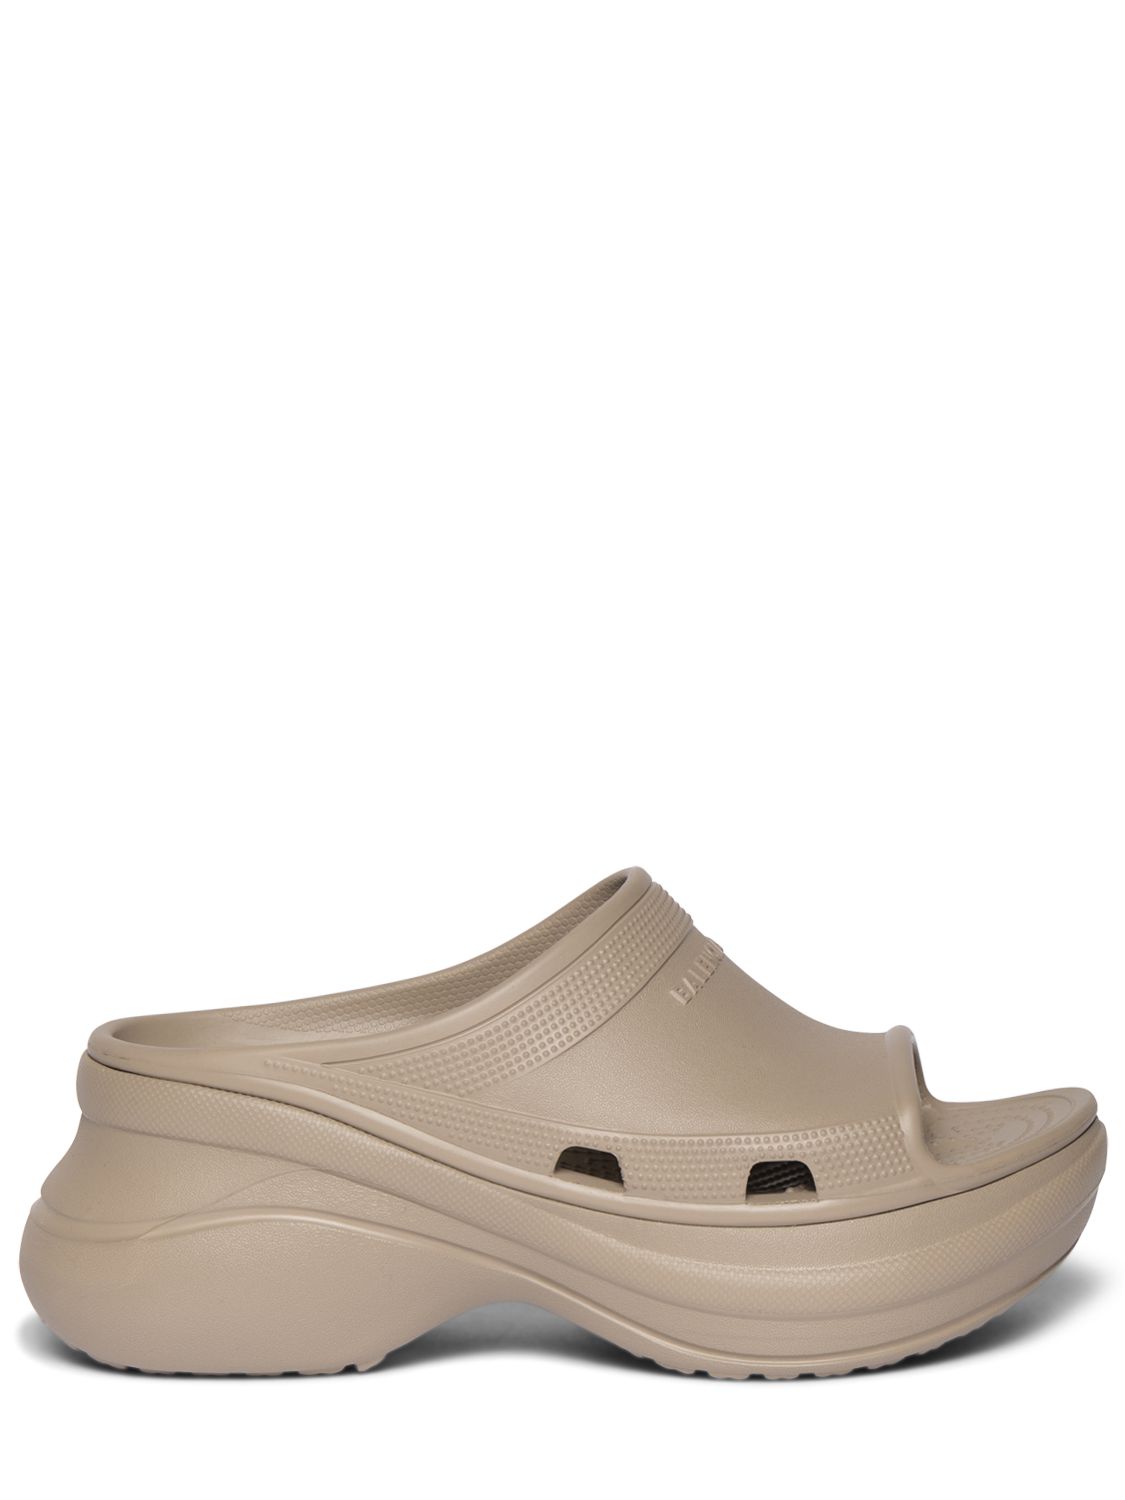 85mm Rubber Pool Slide Sandals